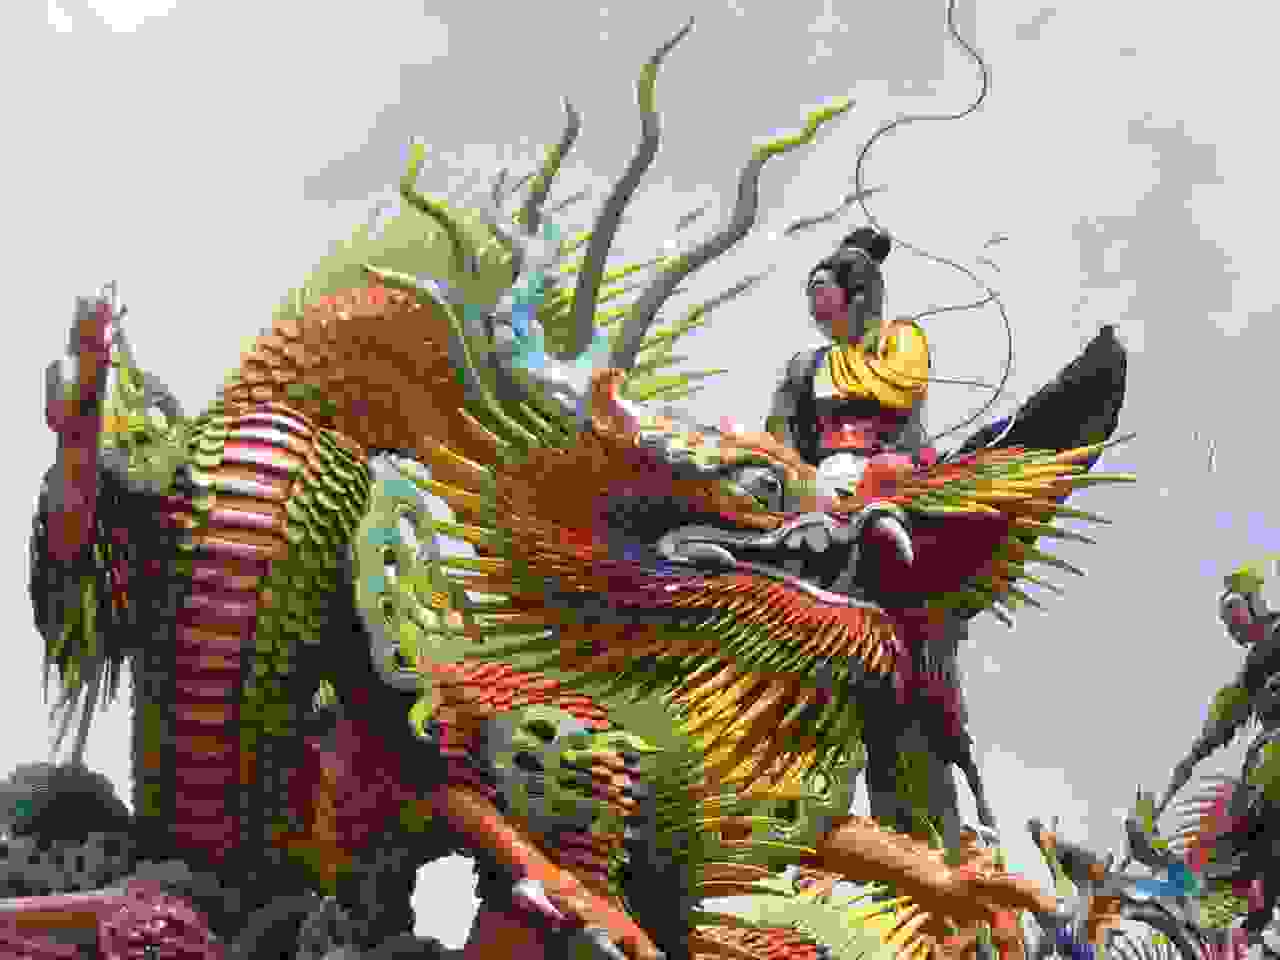 Rooftop dragon in Taiwan